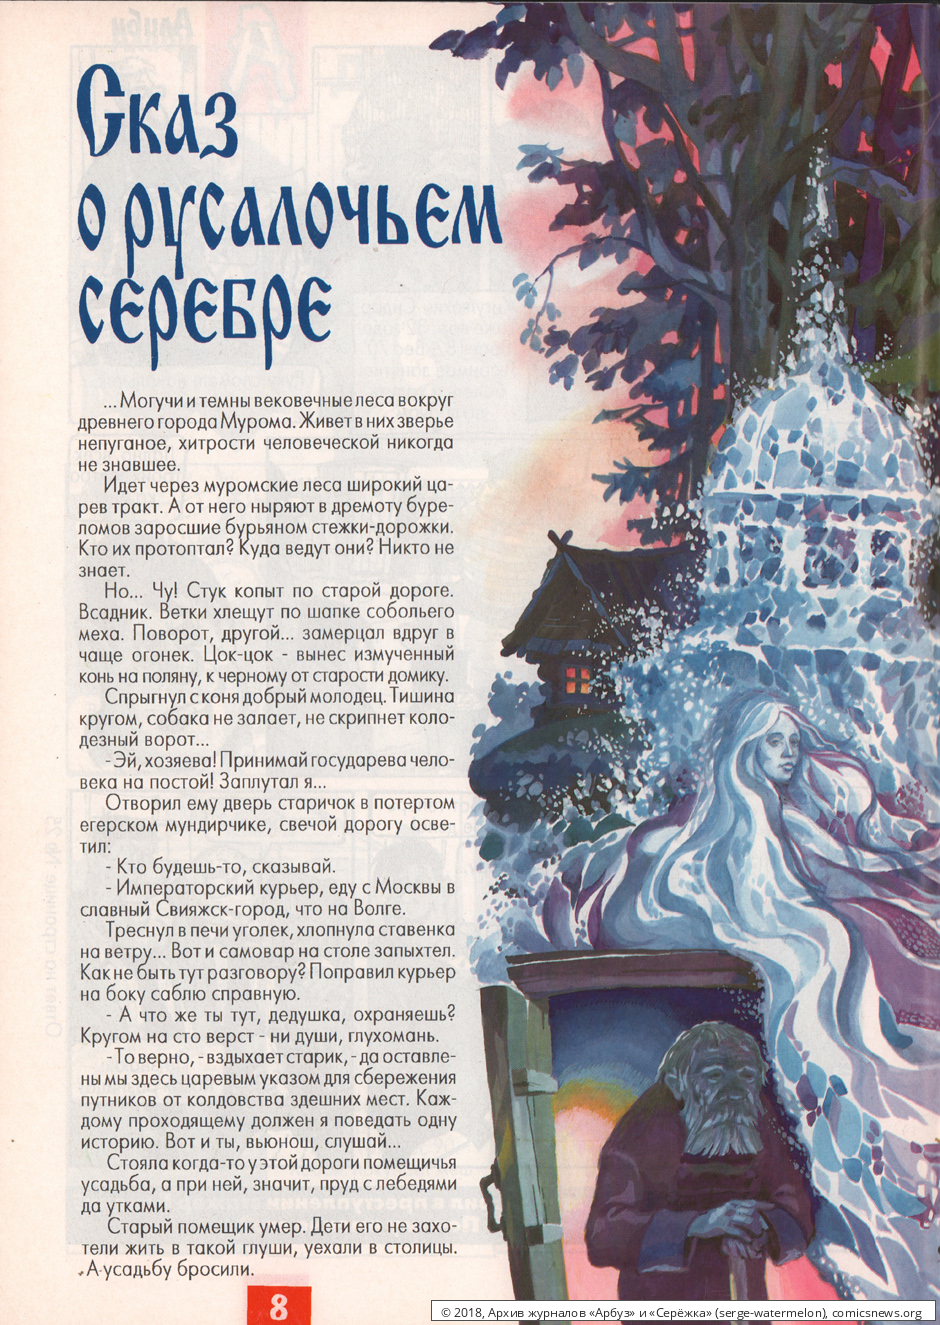 № 31 ( "Арбуз" № 5 / 1997 ) - Архив журналов «Арбуз» и «Серёжка»